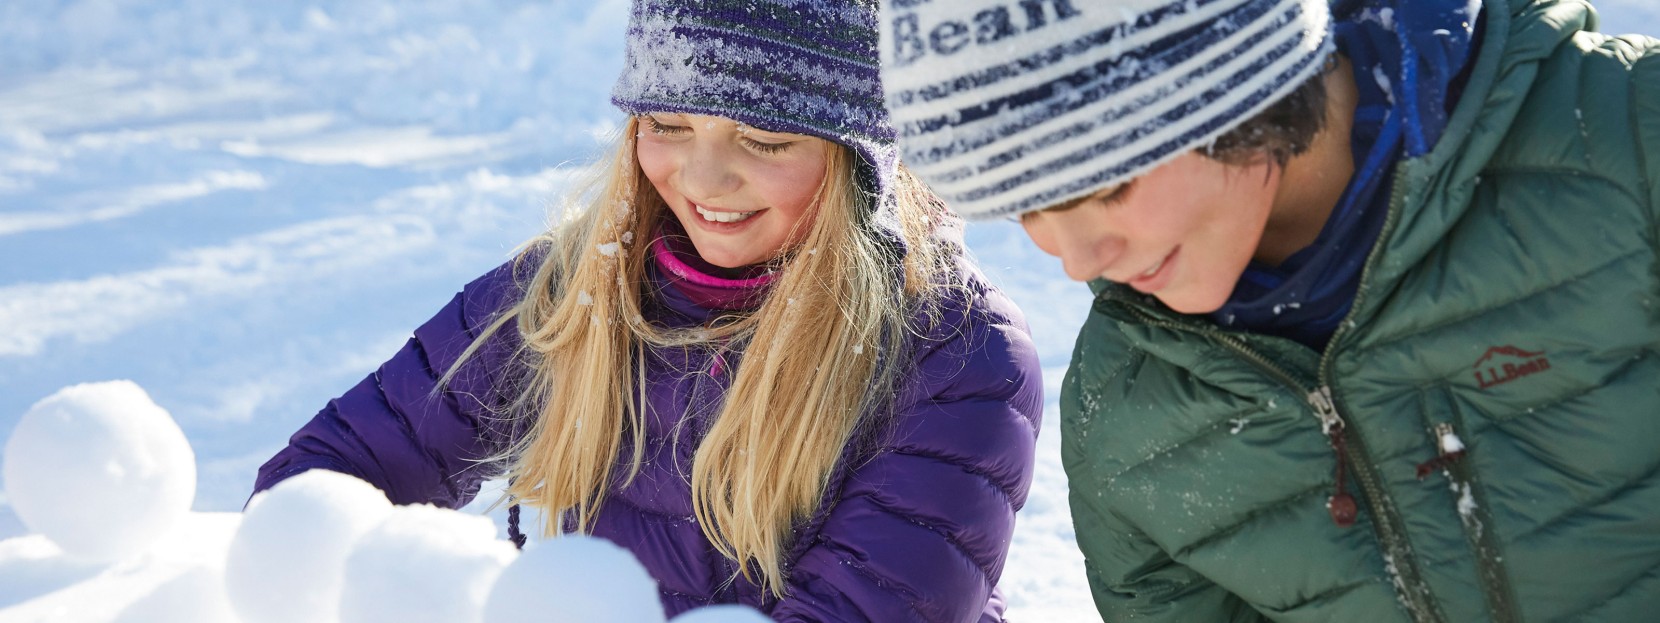 Two children making snowballs